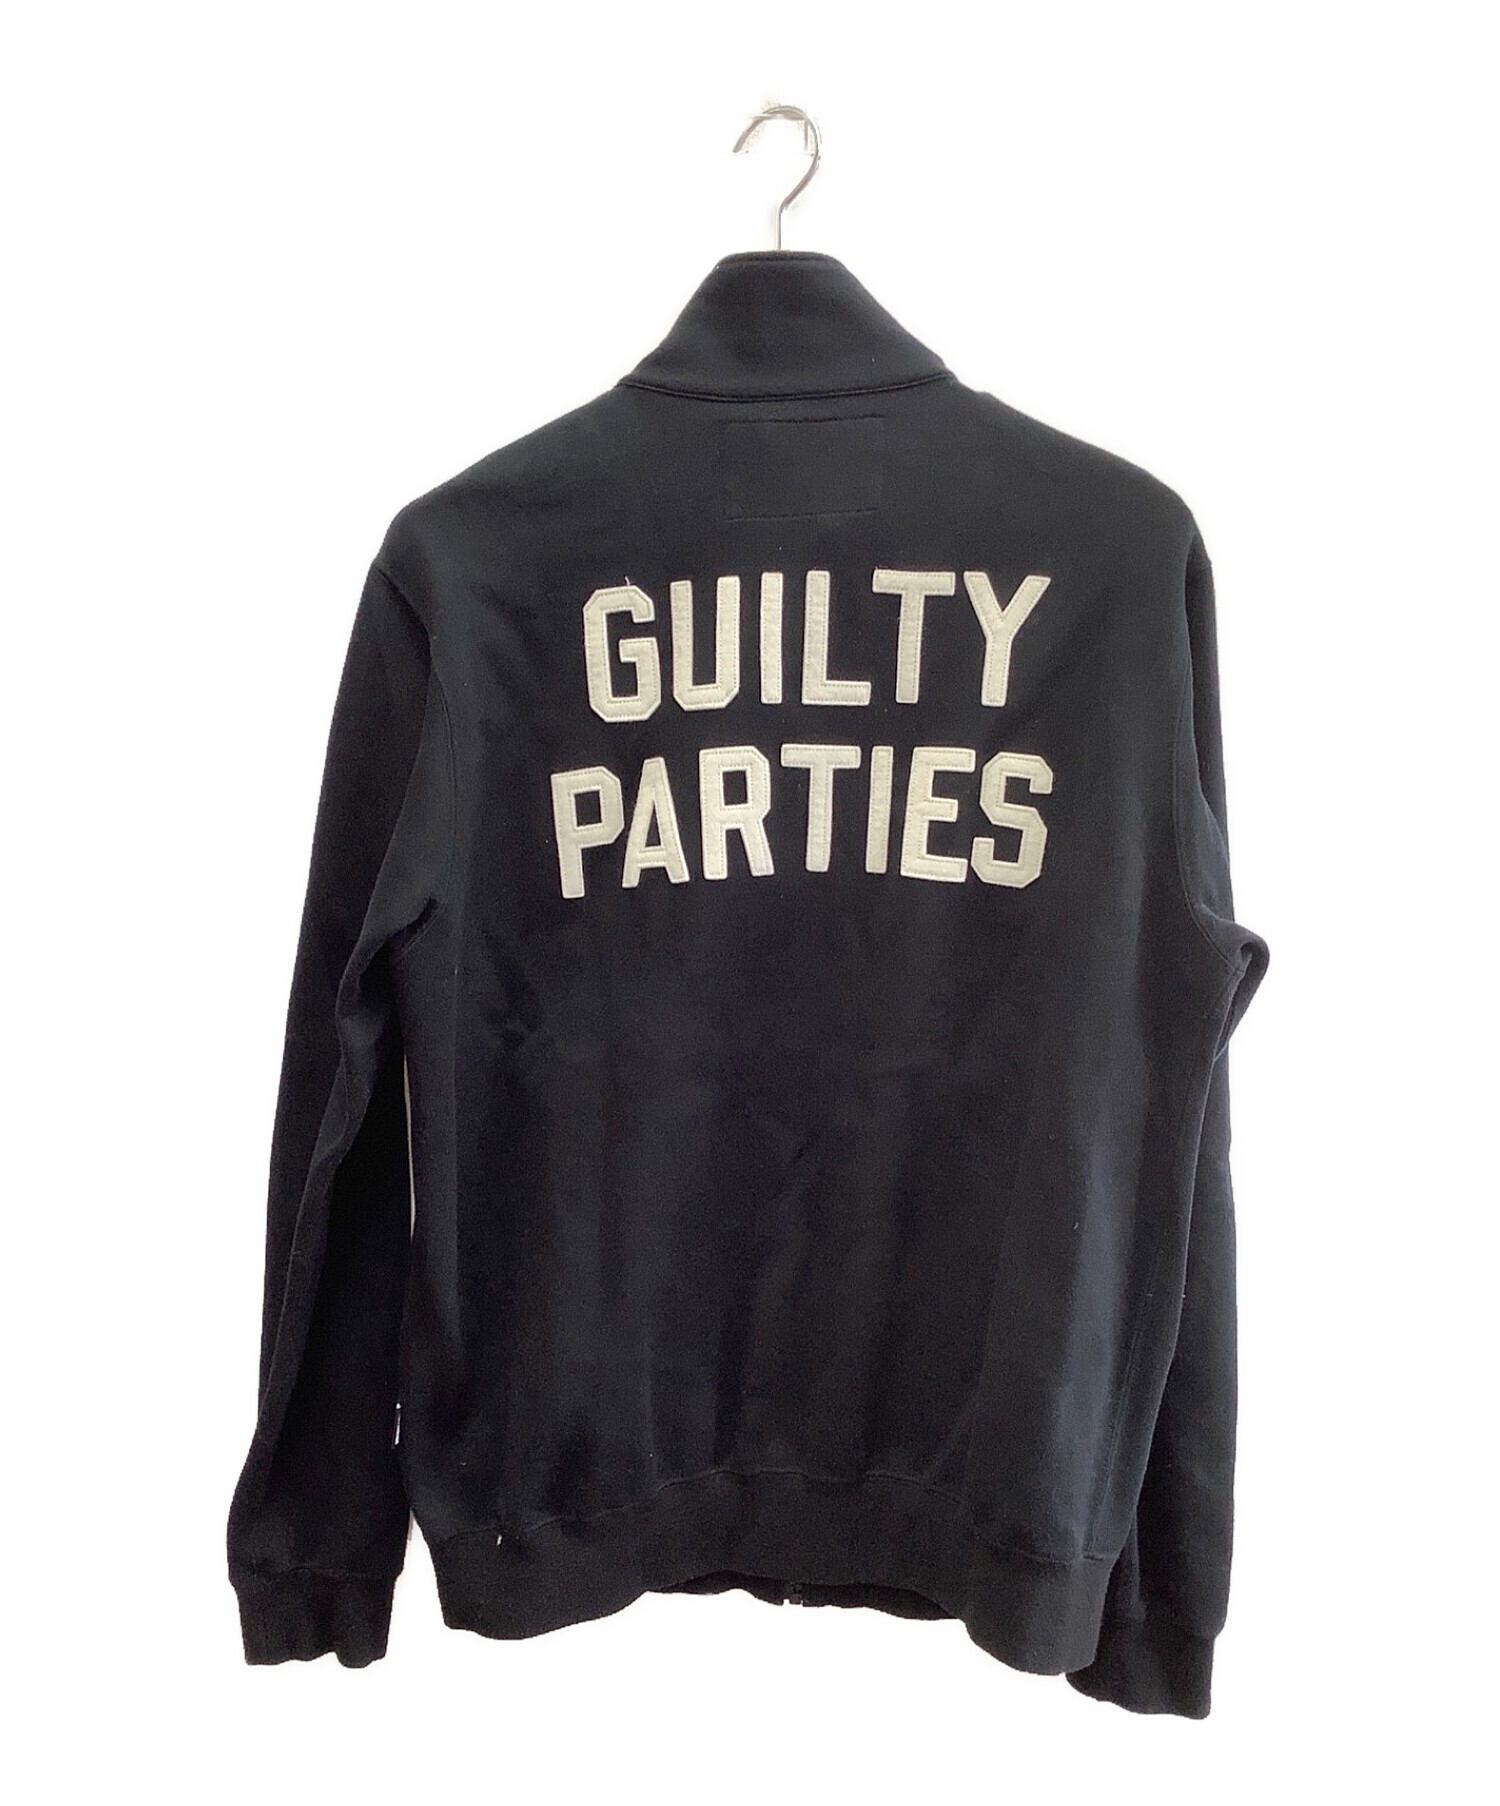 THE GUILTY PARTIES (ザ ギルティーパーティーズ) ジャケット ブラック サイズ:M